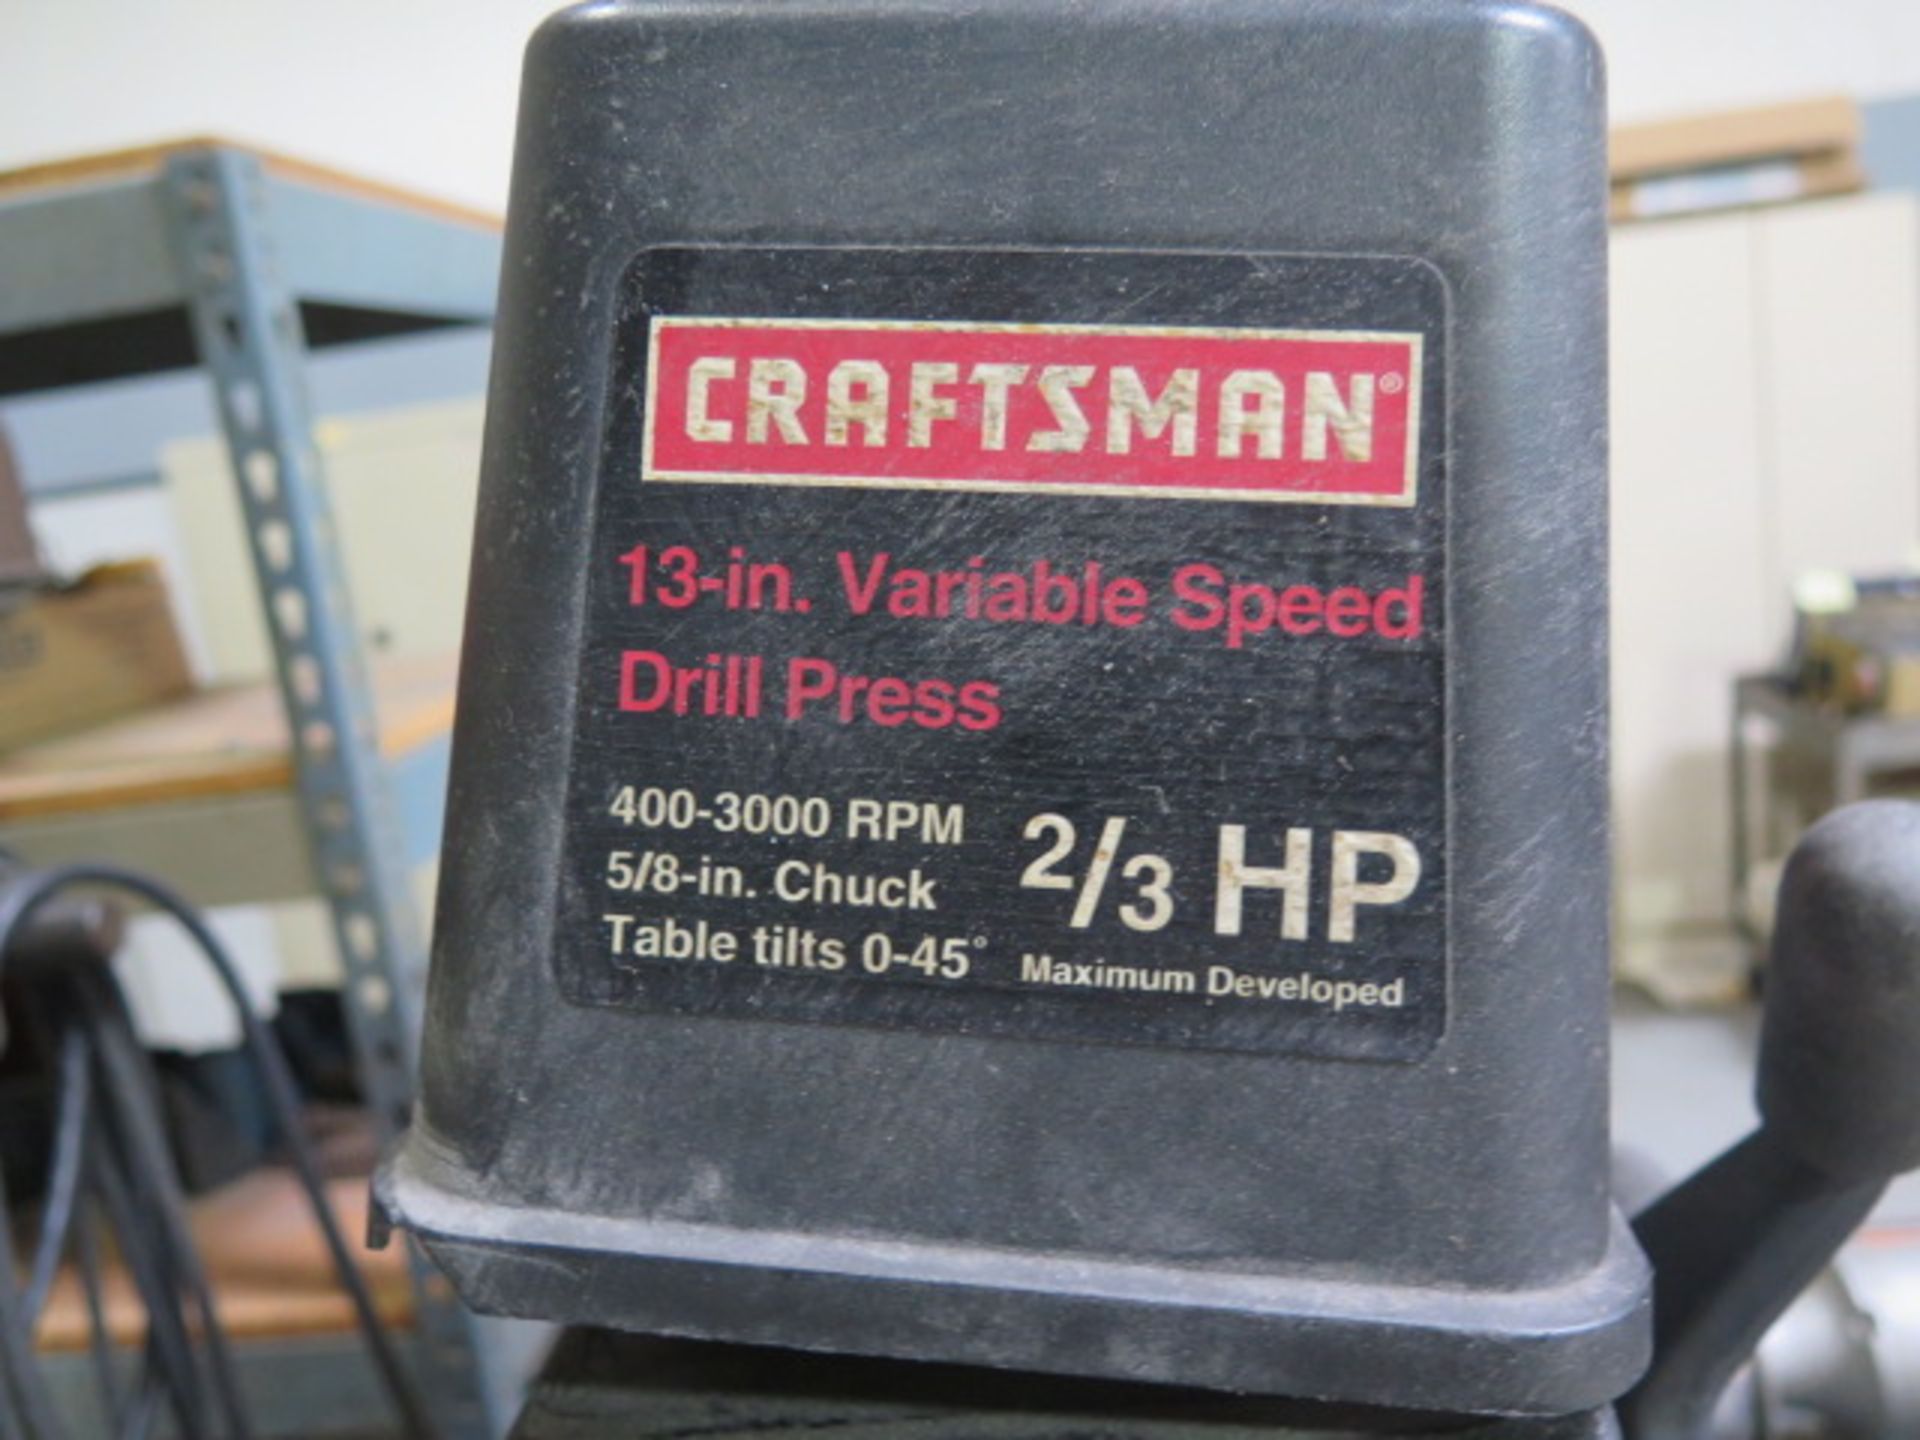 Craftsmann 13" Pedestal Drill Prtess - Image 4 of 4